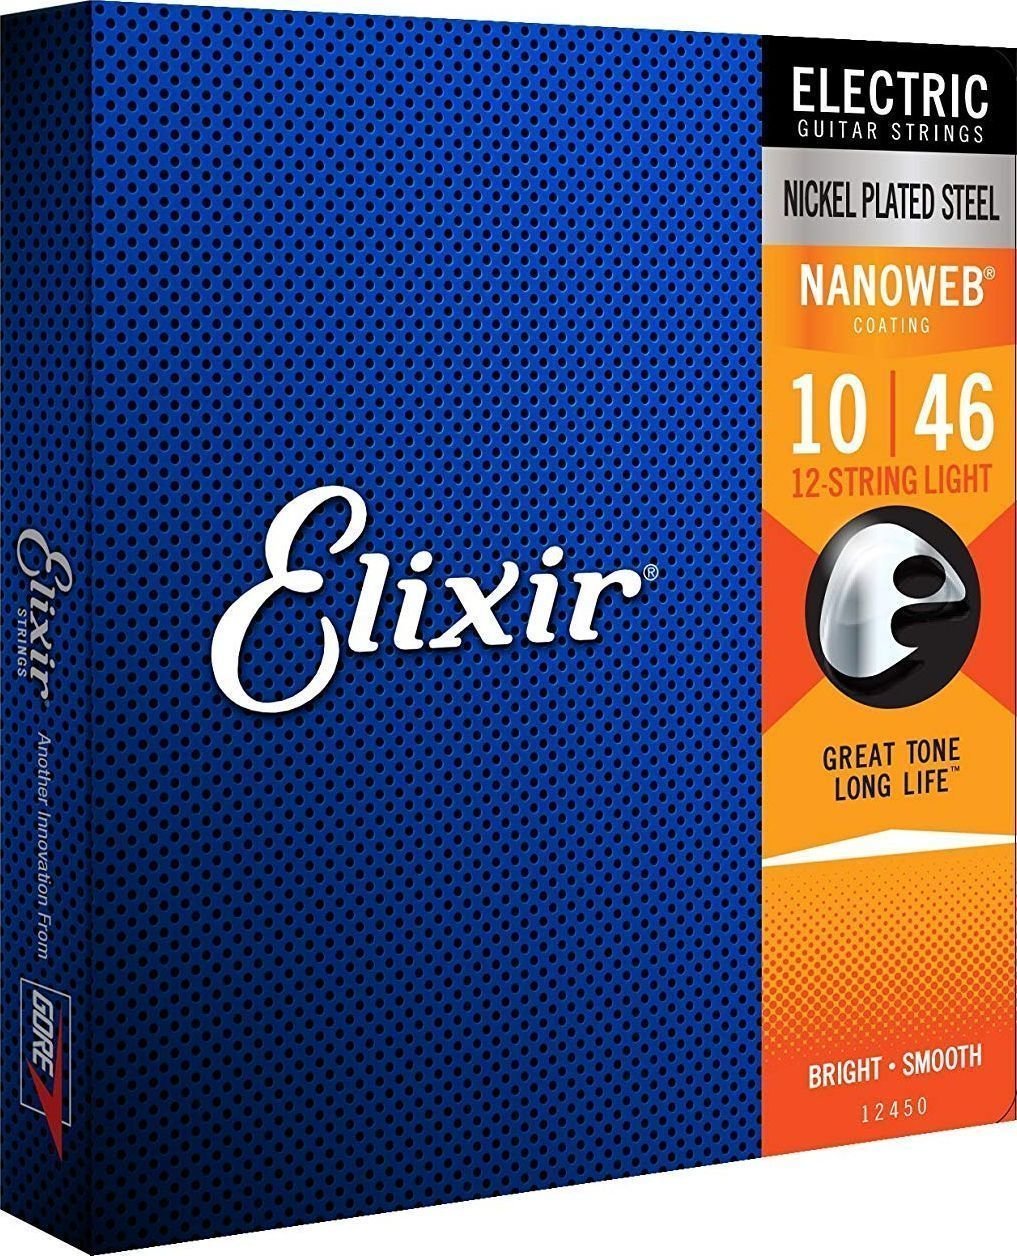 E-guitar strings Elixir 12450 NanoWeb 12-String 10-46